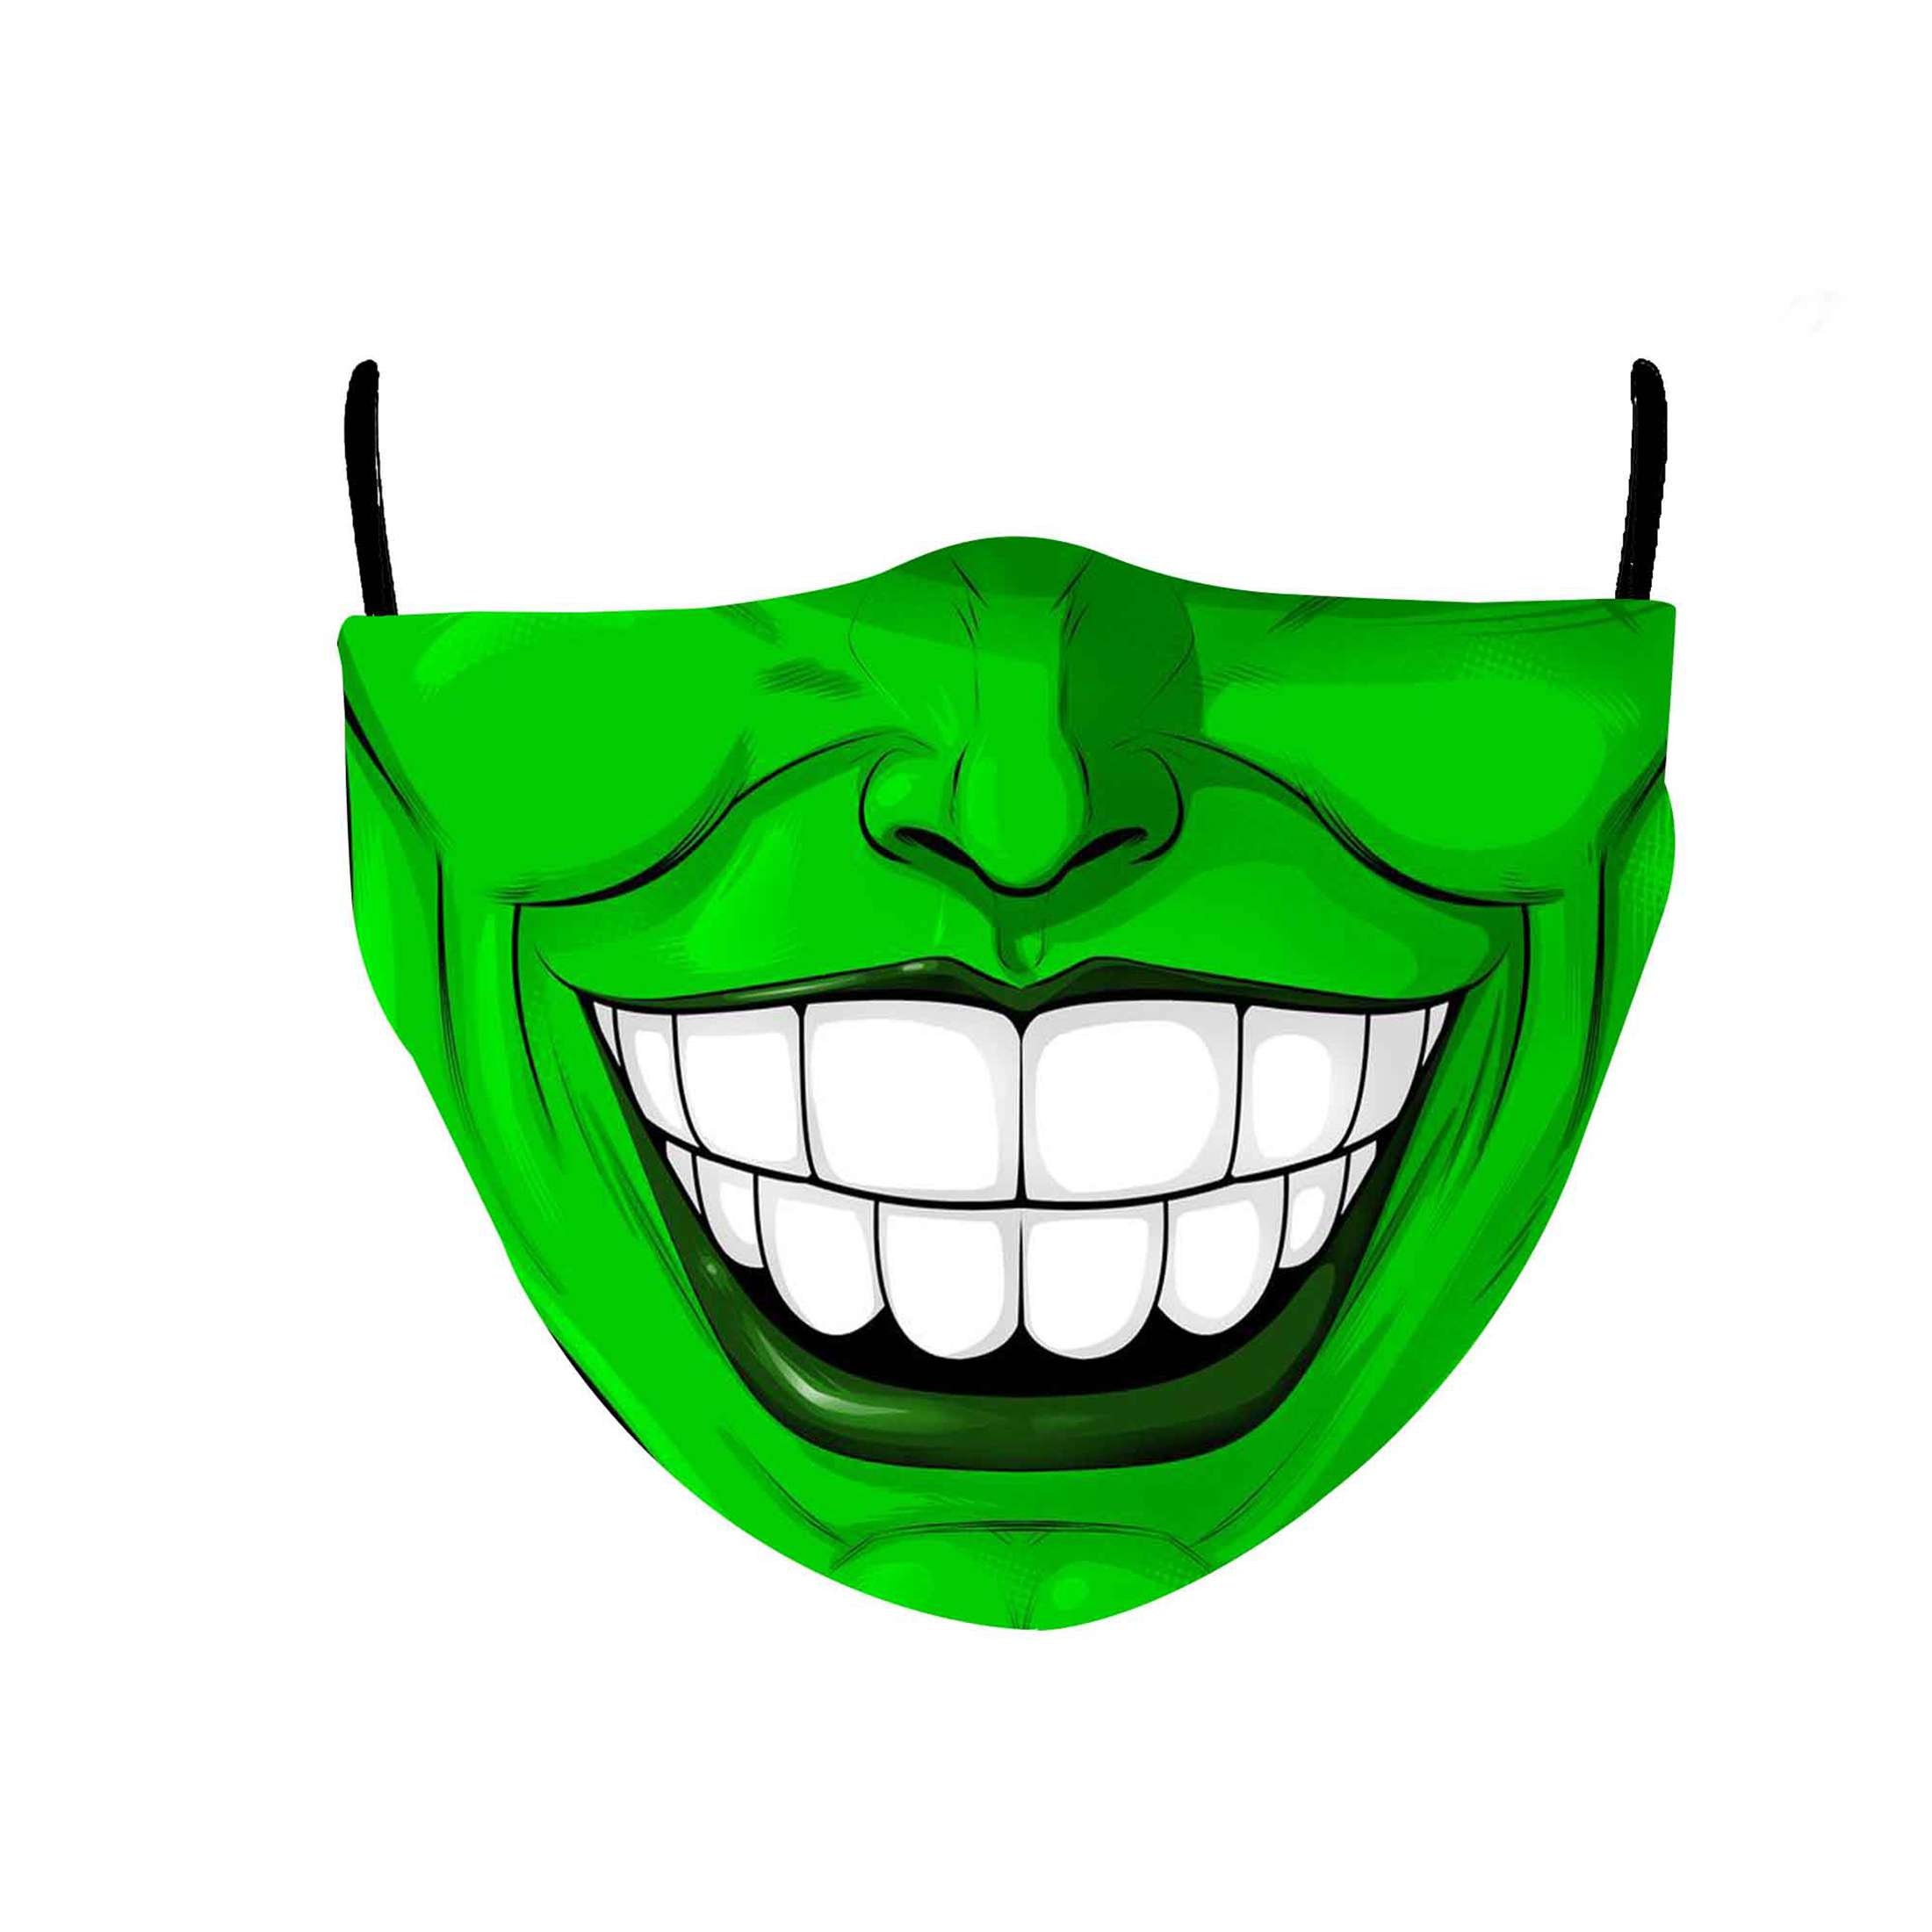 Jim Carrey Green Face Mask Halloween